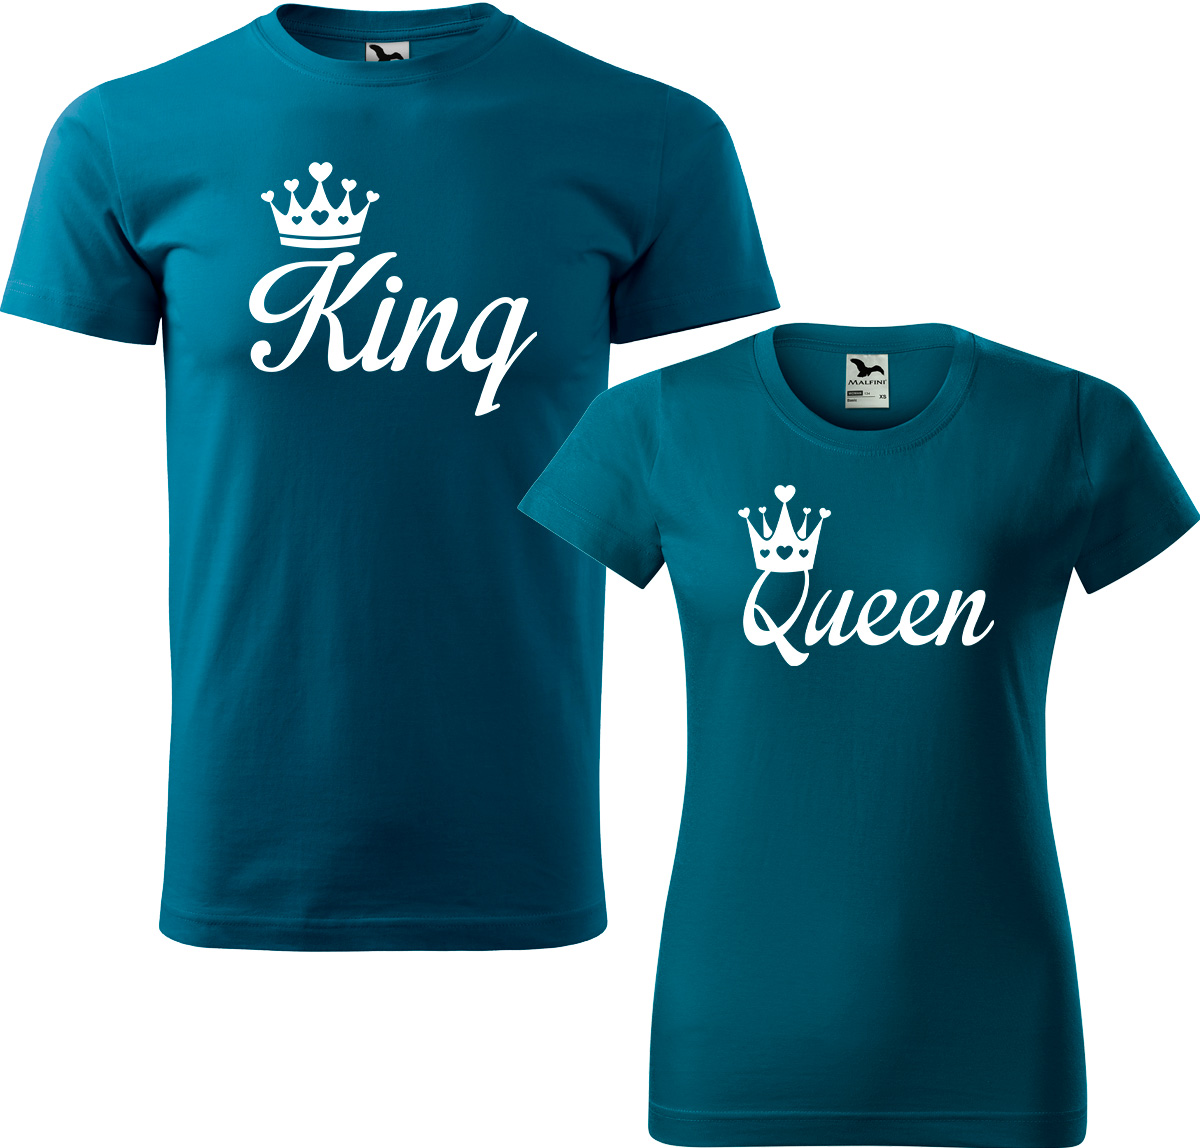 Trička pro páry - King a queen Barva: Petrolejová (93), Velikost dámské tričko: M, Velikost pánské tričko: 4XL